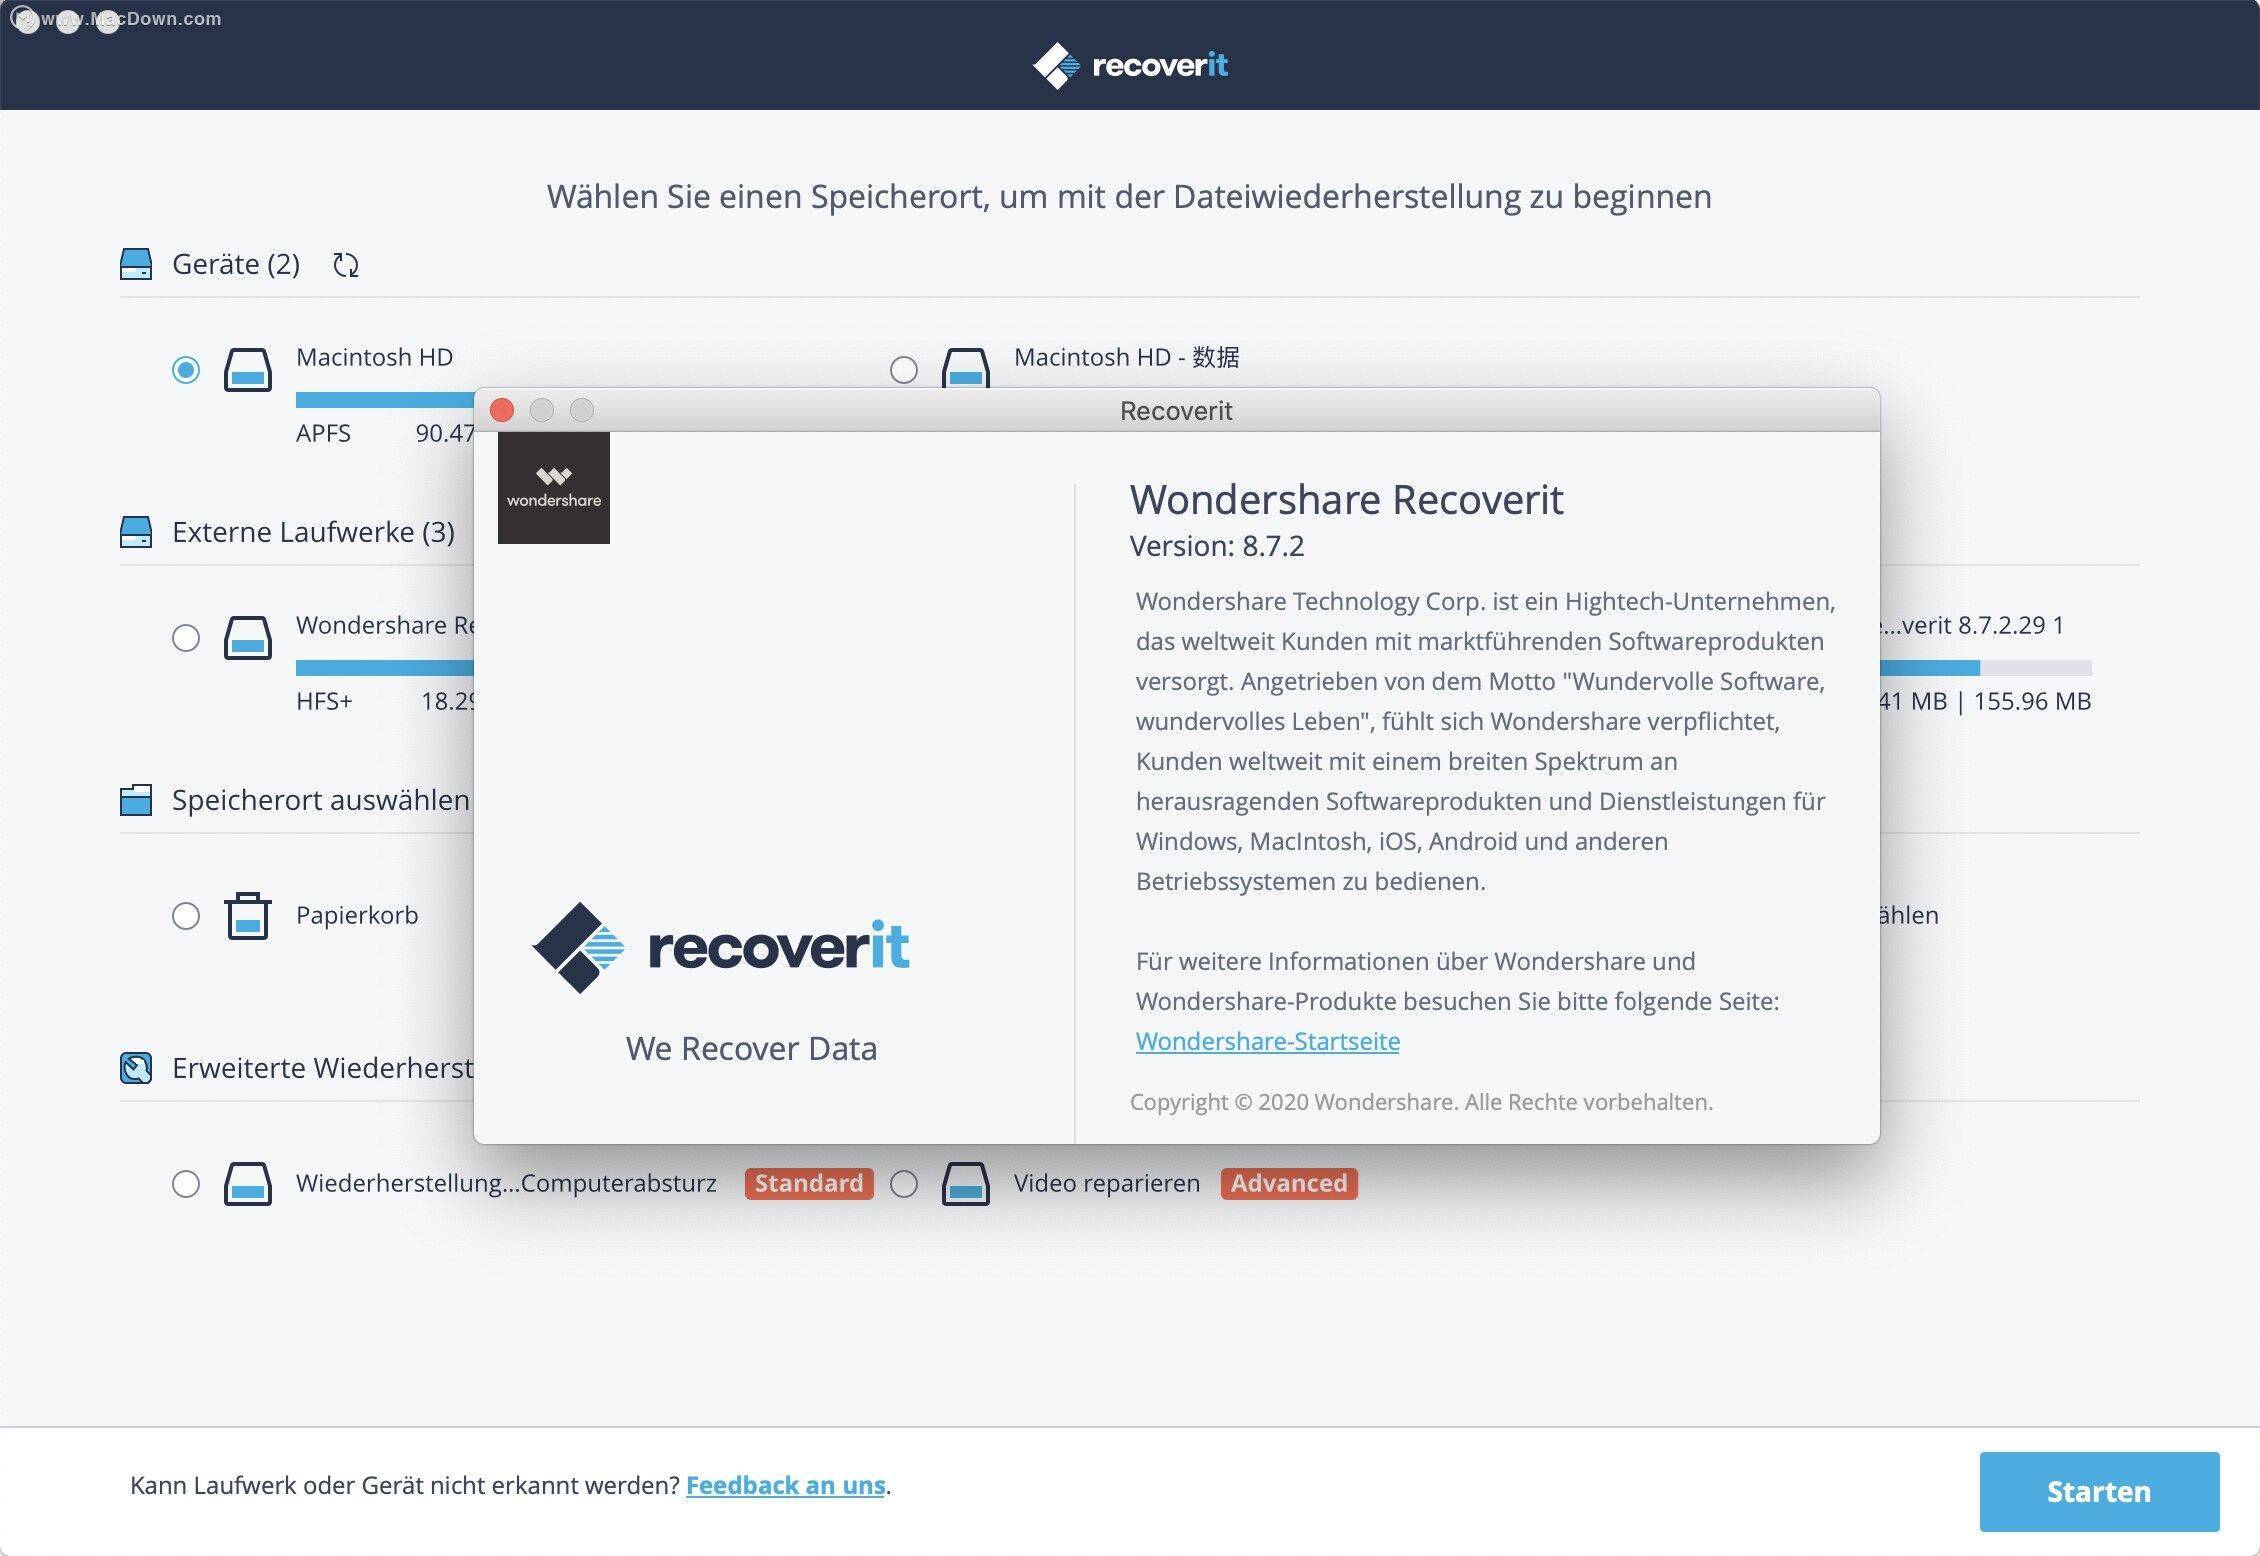 电子数码商城下载苹果版:mac上好用的数据恢复软件Wondershare Recoverit授权版